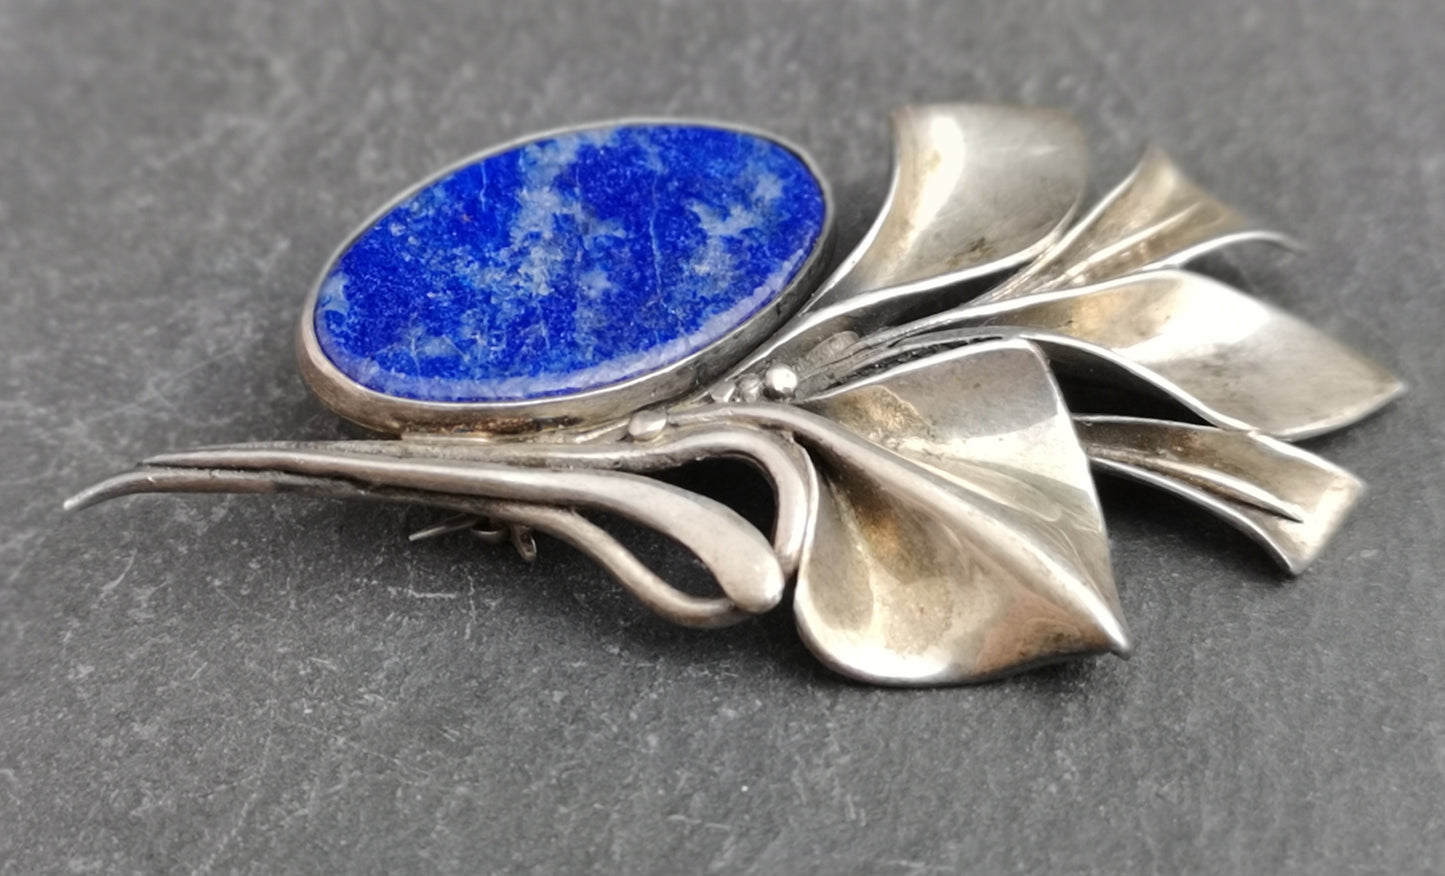 Antique Art Nouveau silver and Lapis lazuli brooch